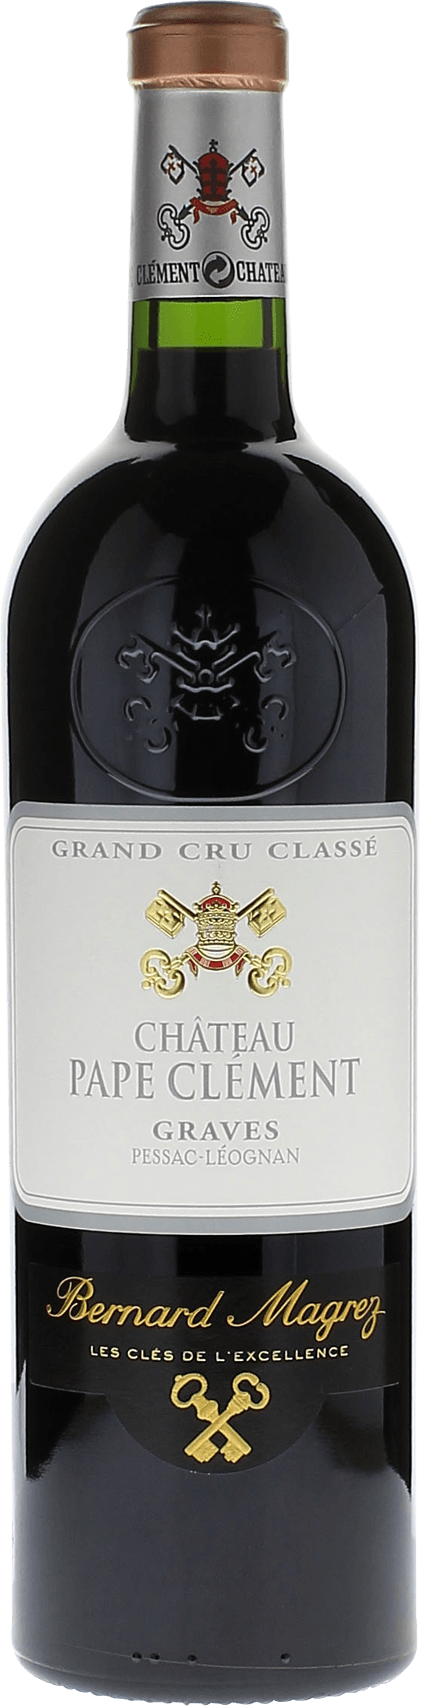 Pape clement rouge 1995 cru class Pessac-Lognan, Bordeaux rouge